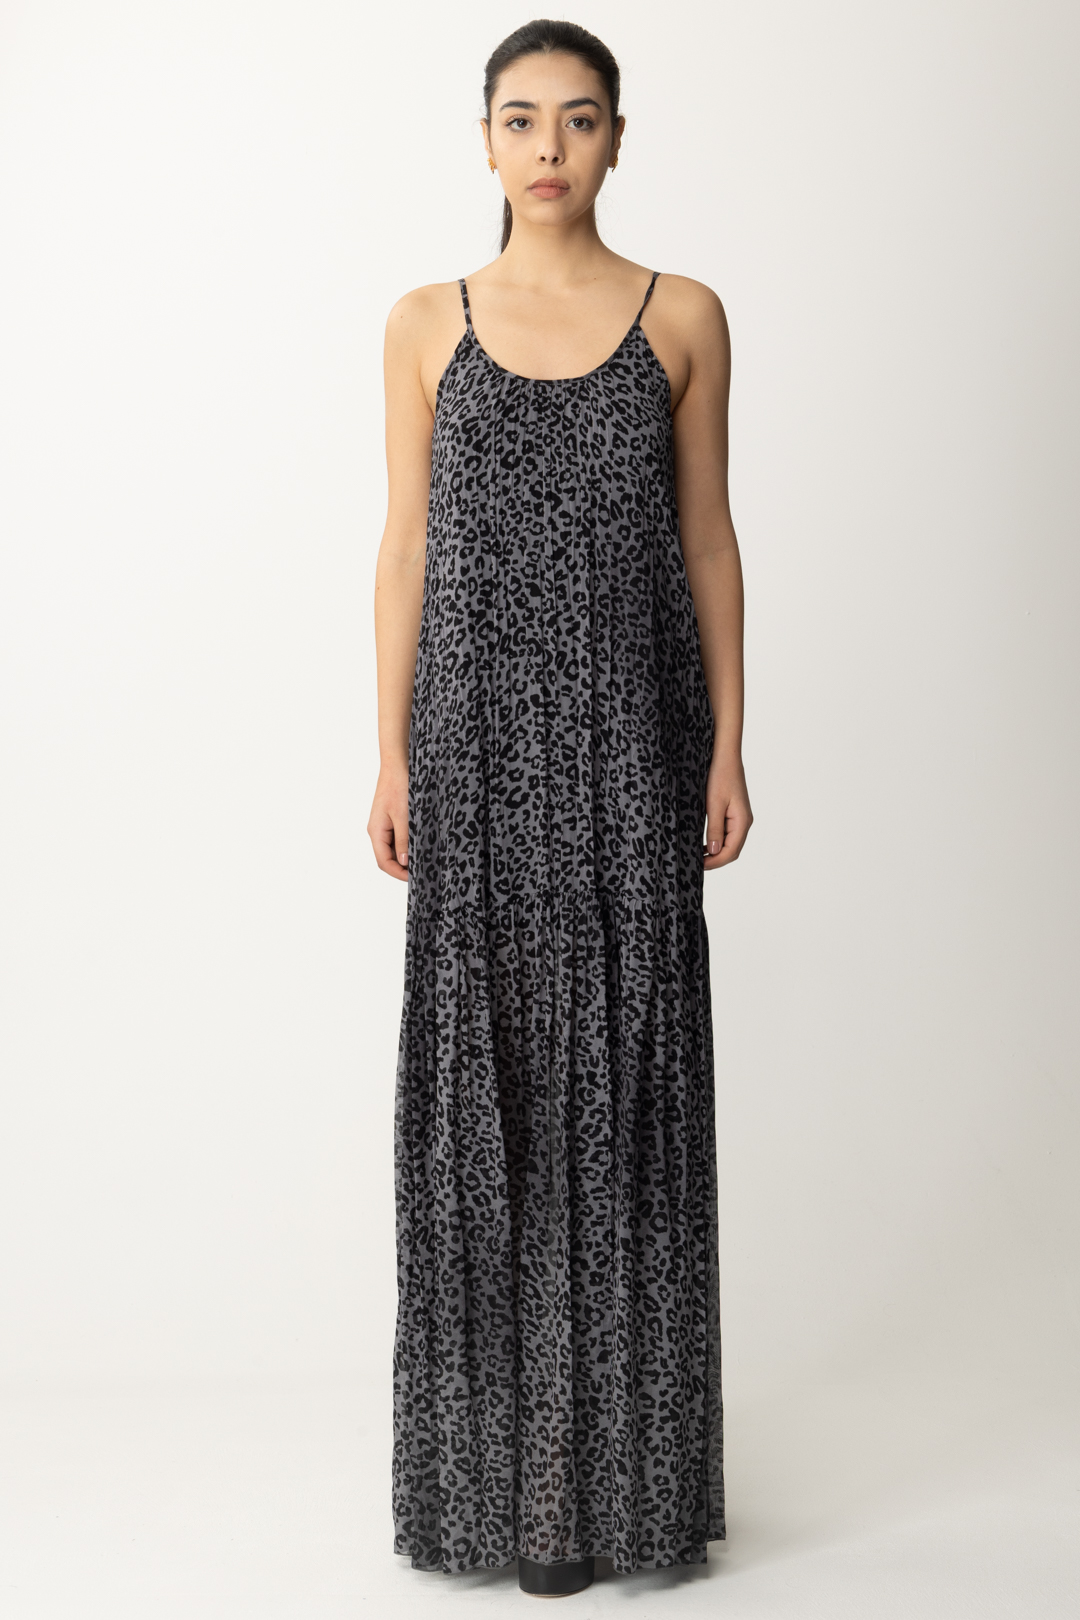 Vorschau: Aniye By Langes Kleid mit Edy-Print und Hosenträgern MAKU BLACK